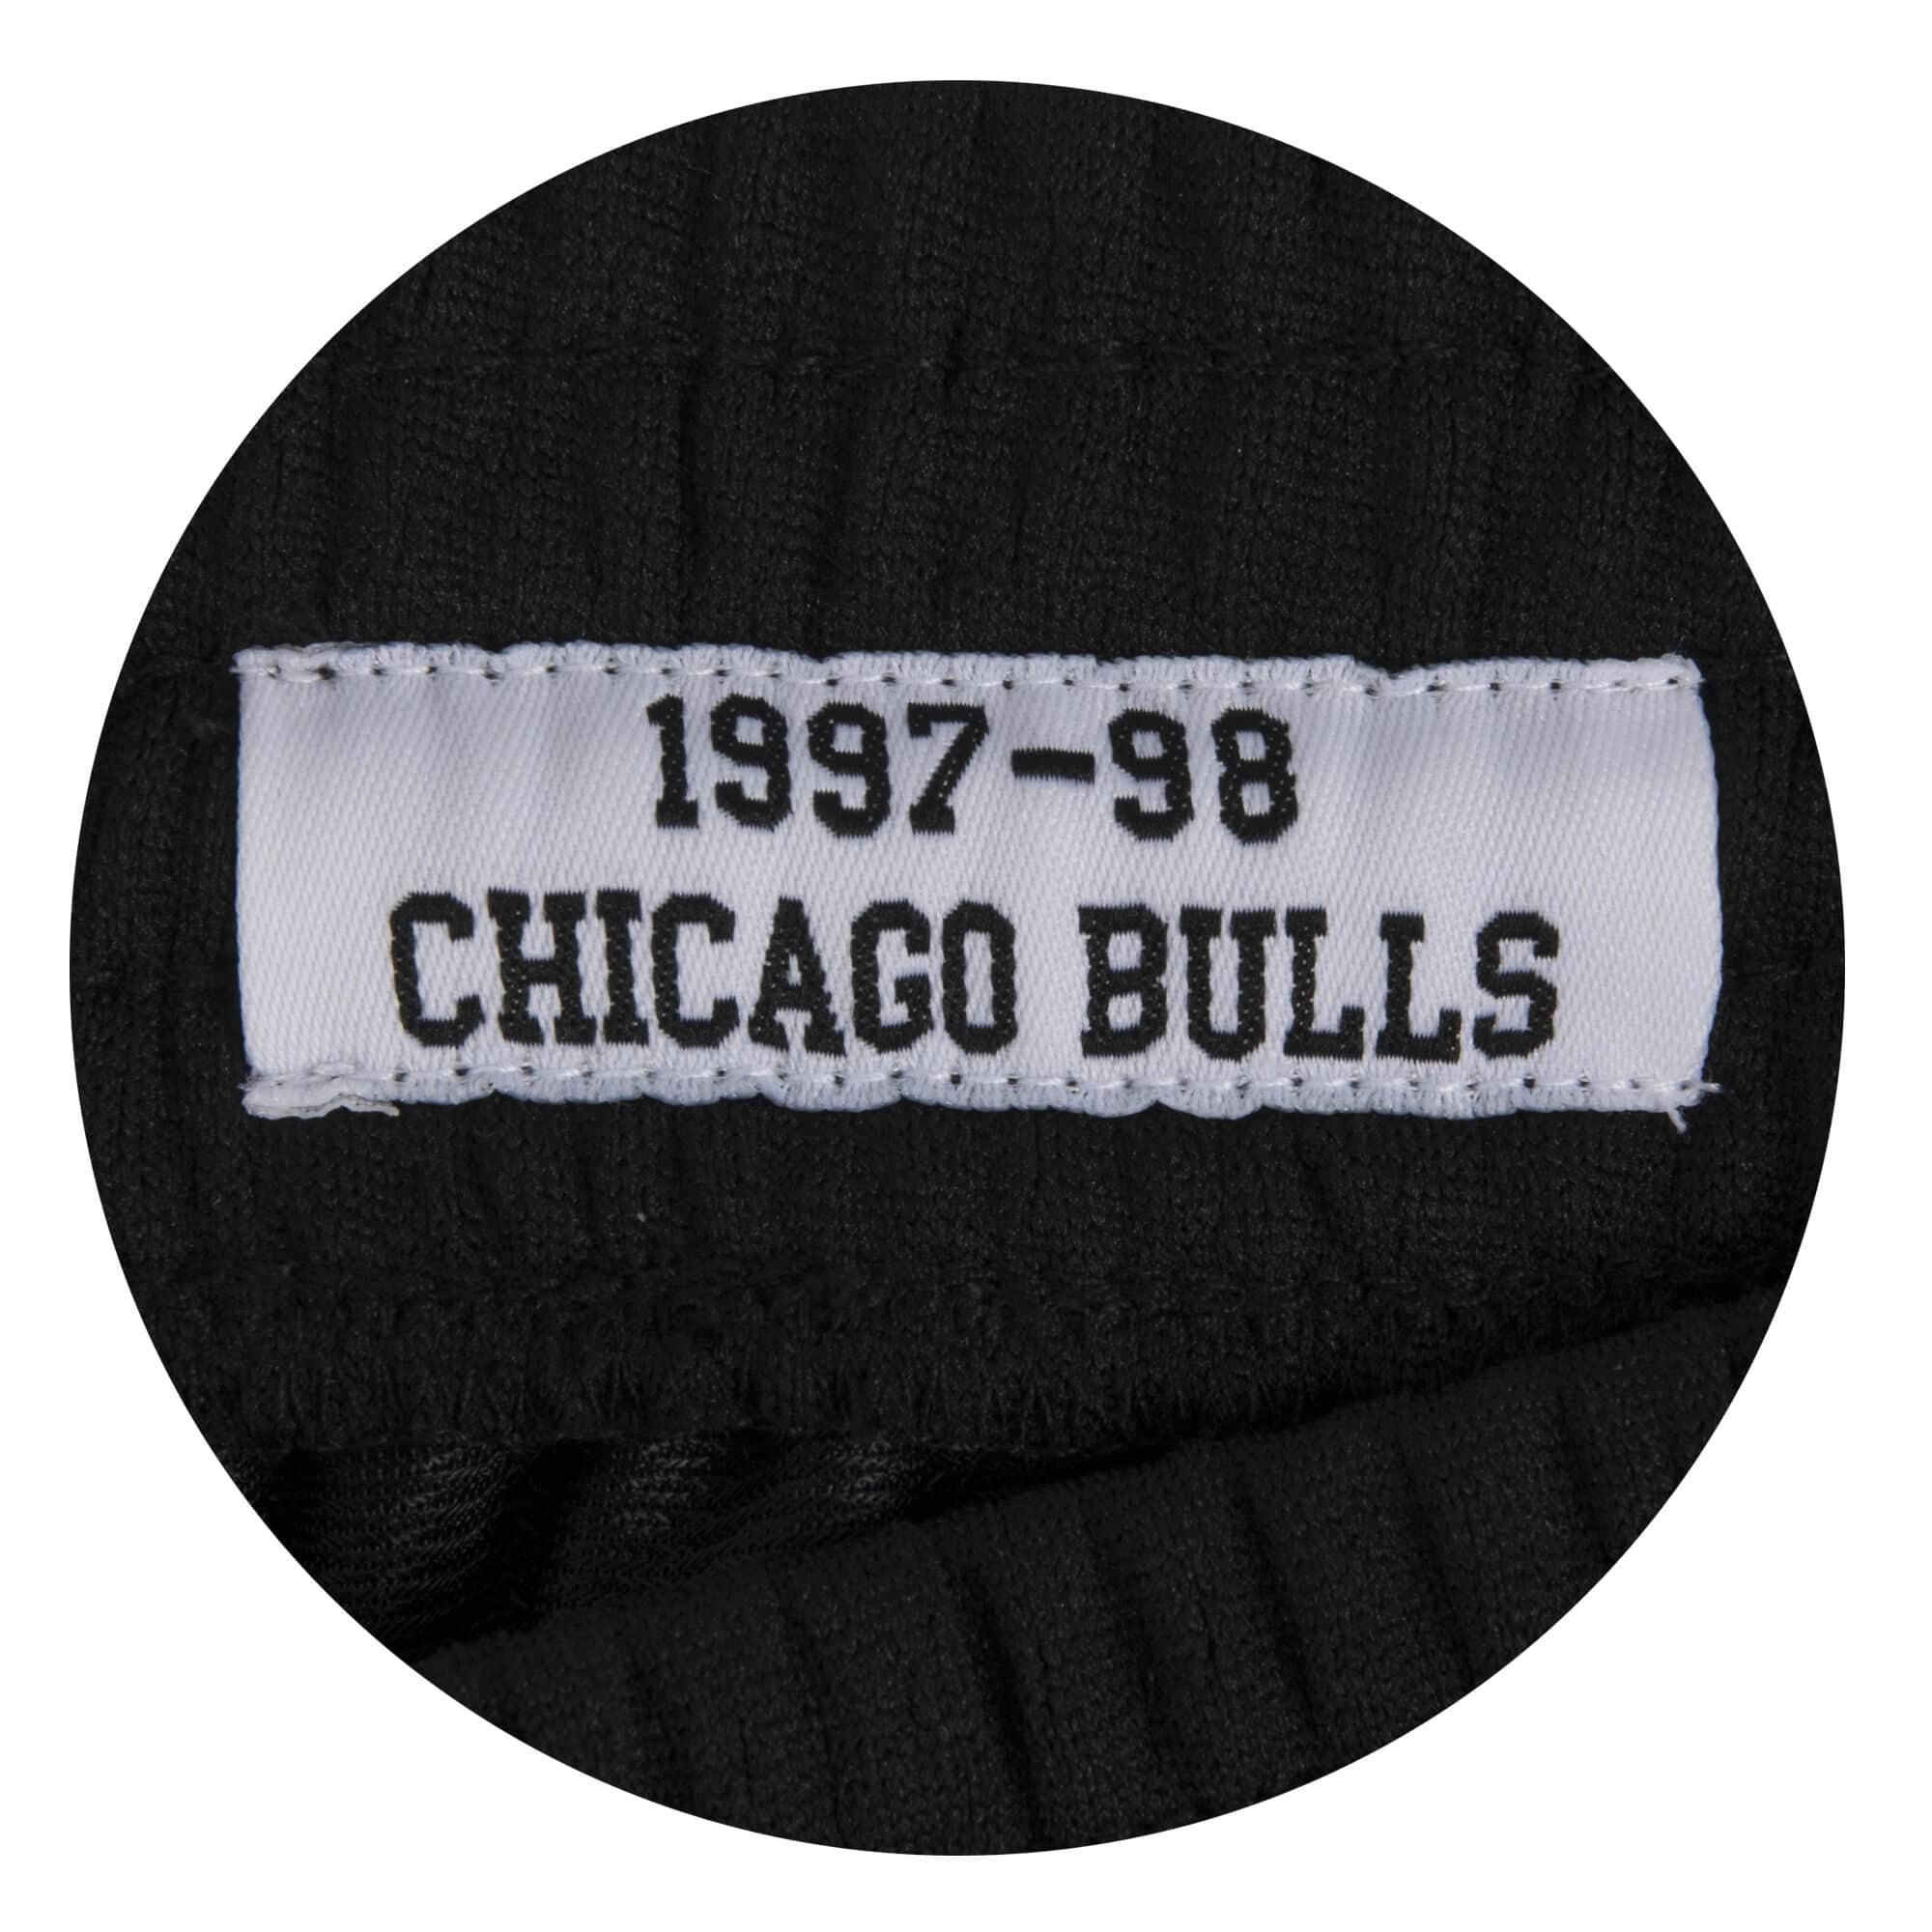 Women's Mitchell & Ness Chicago Bulls NBA 1997-98 Swingman Shorts